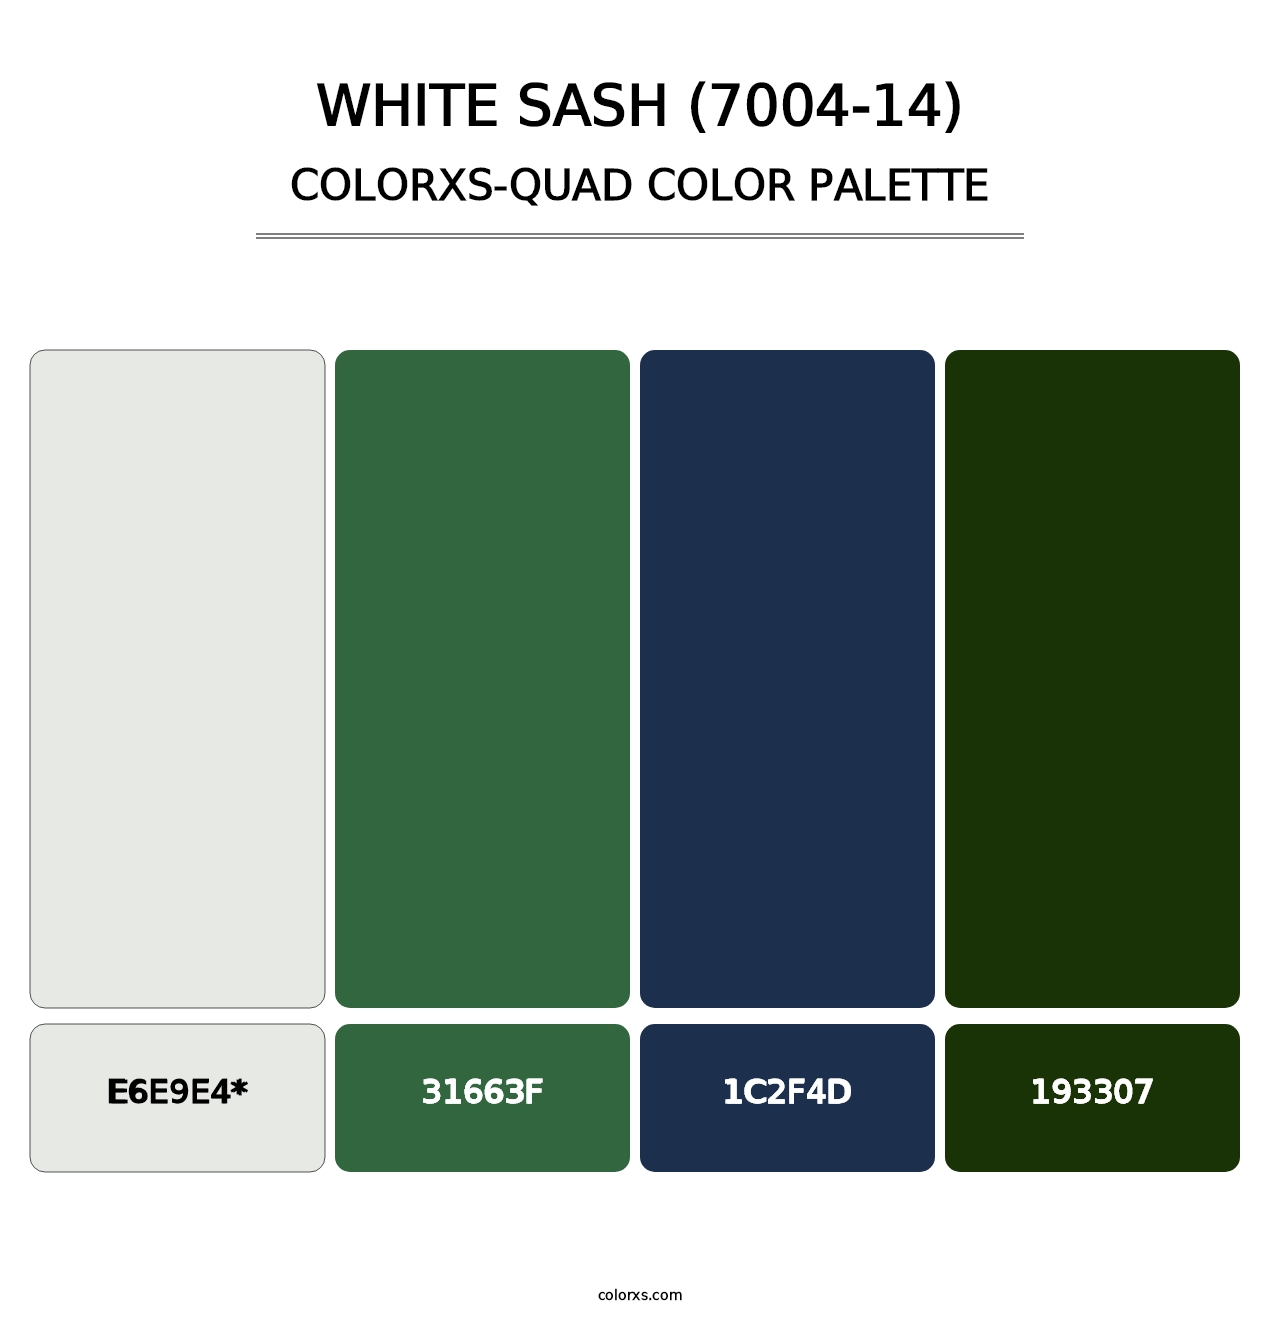 White Sash (7004-14) - Colorxs Quad Palette